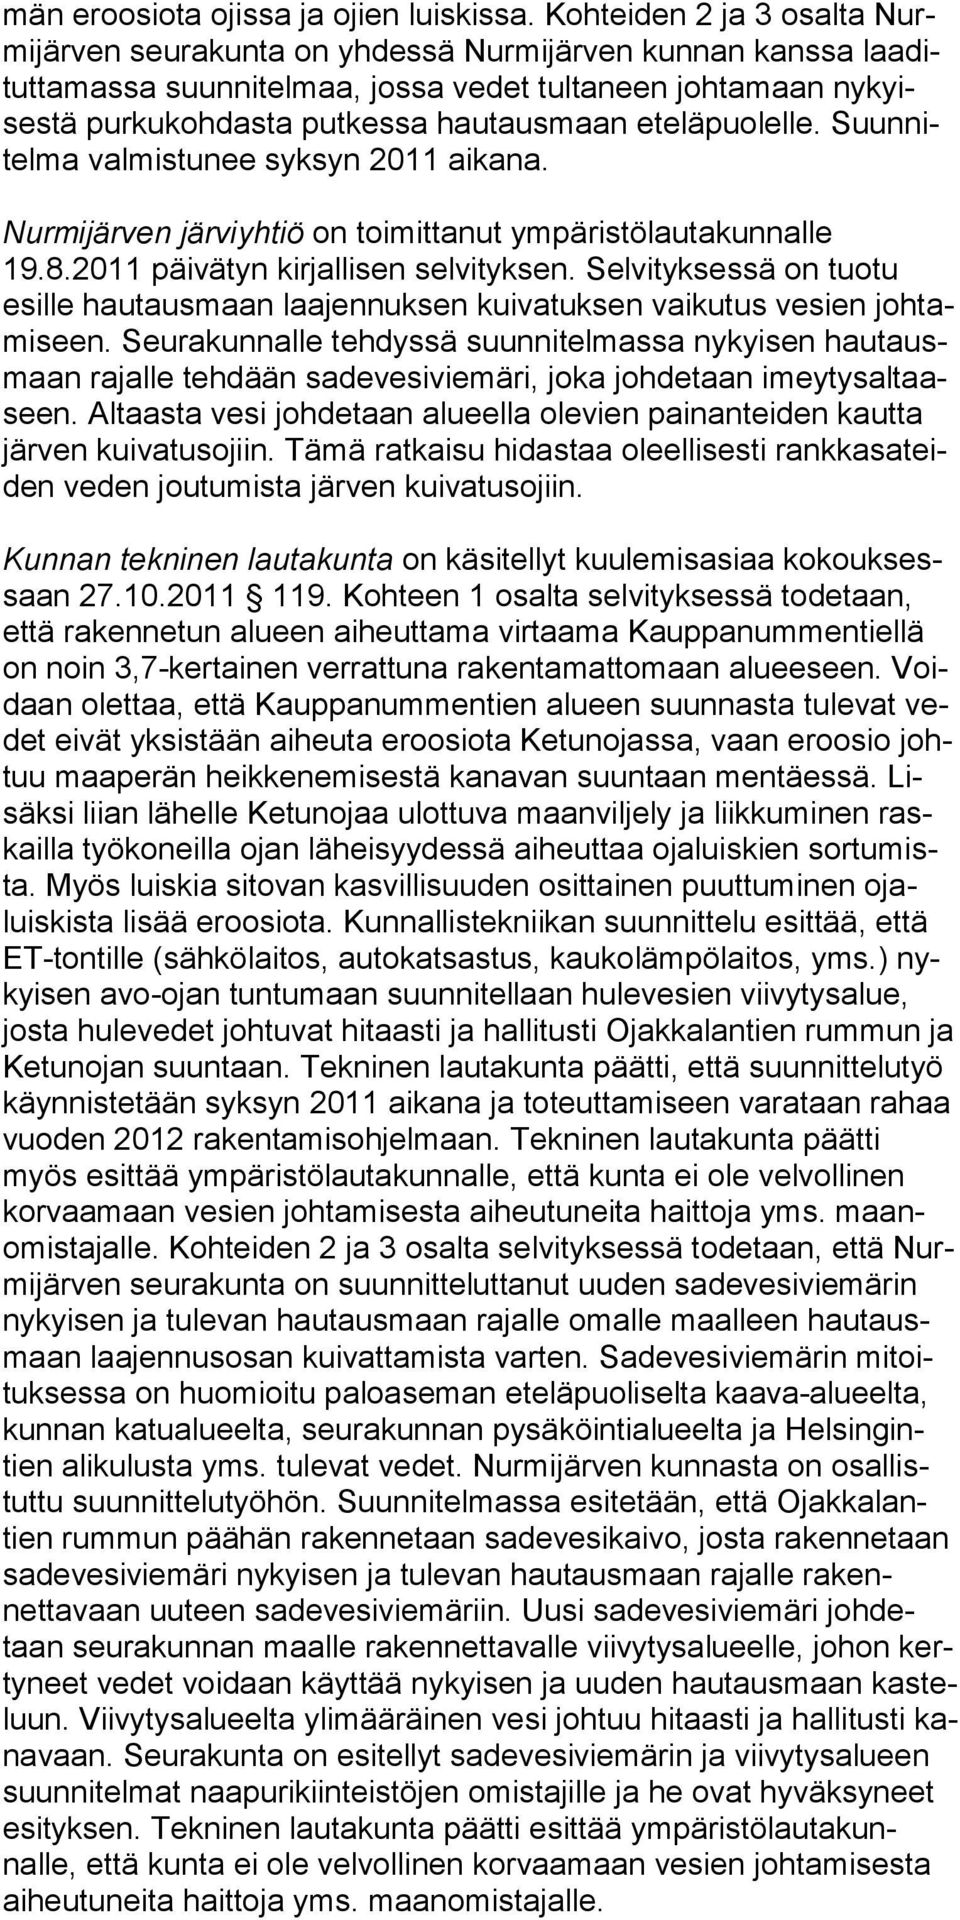 taus maan etelä puo lelle. Suunnitelma valmis tu nee syk syn 2011 aika na. Nurmijärven järviyhtiö on toimittanut ympäristölautakunnalle 19.8.2011 päivätyn kirjallisen selvityksen.